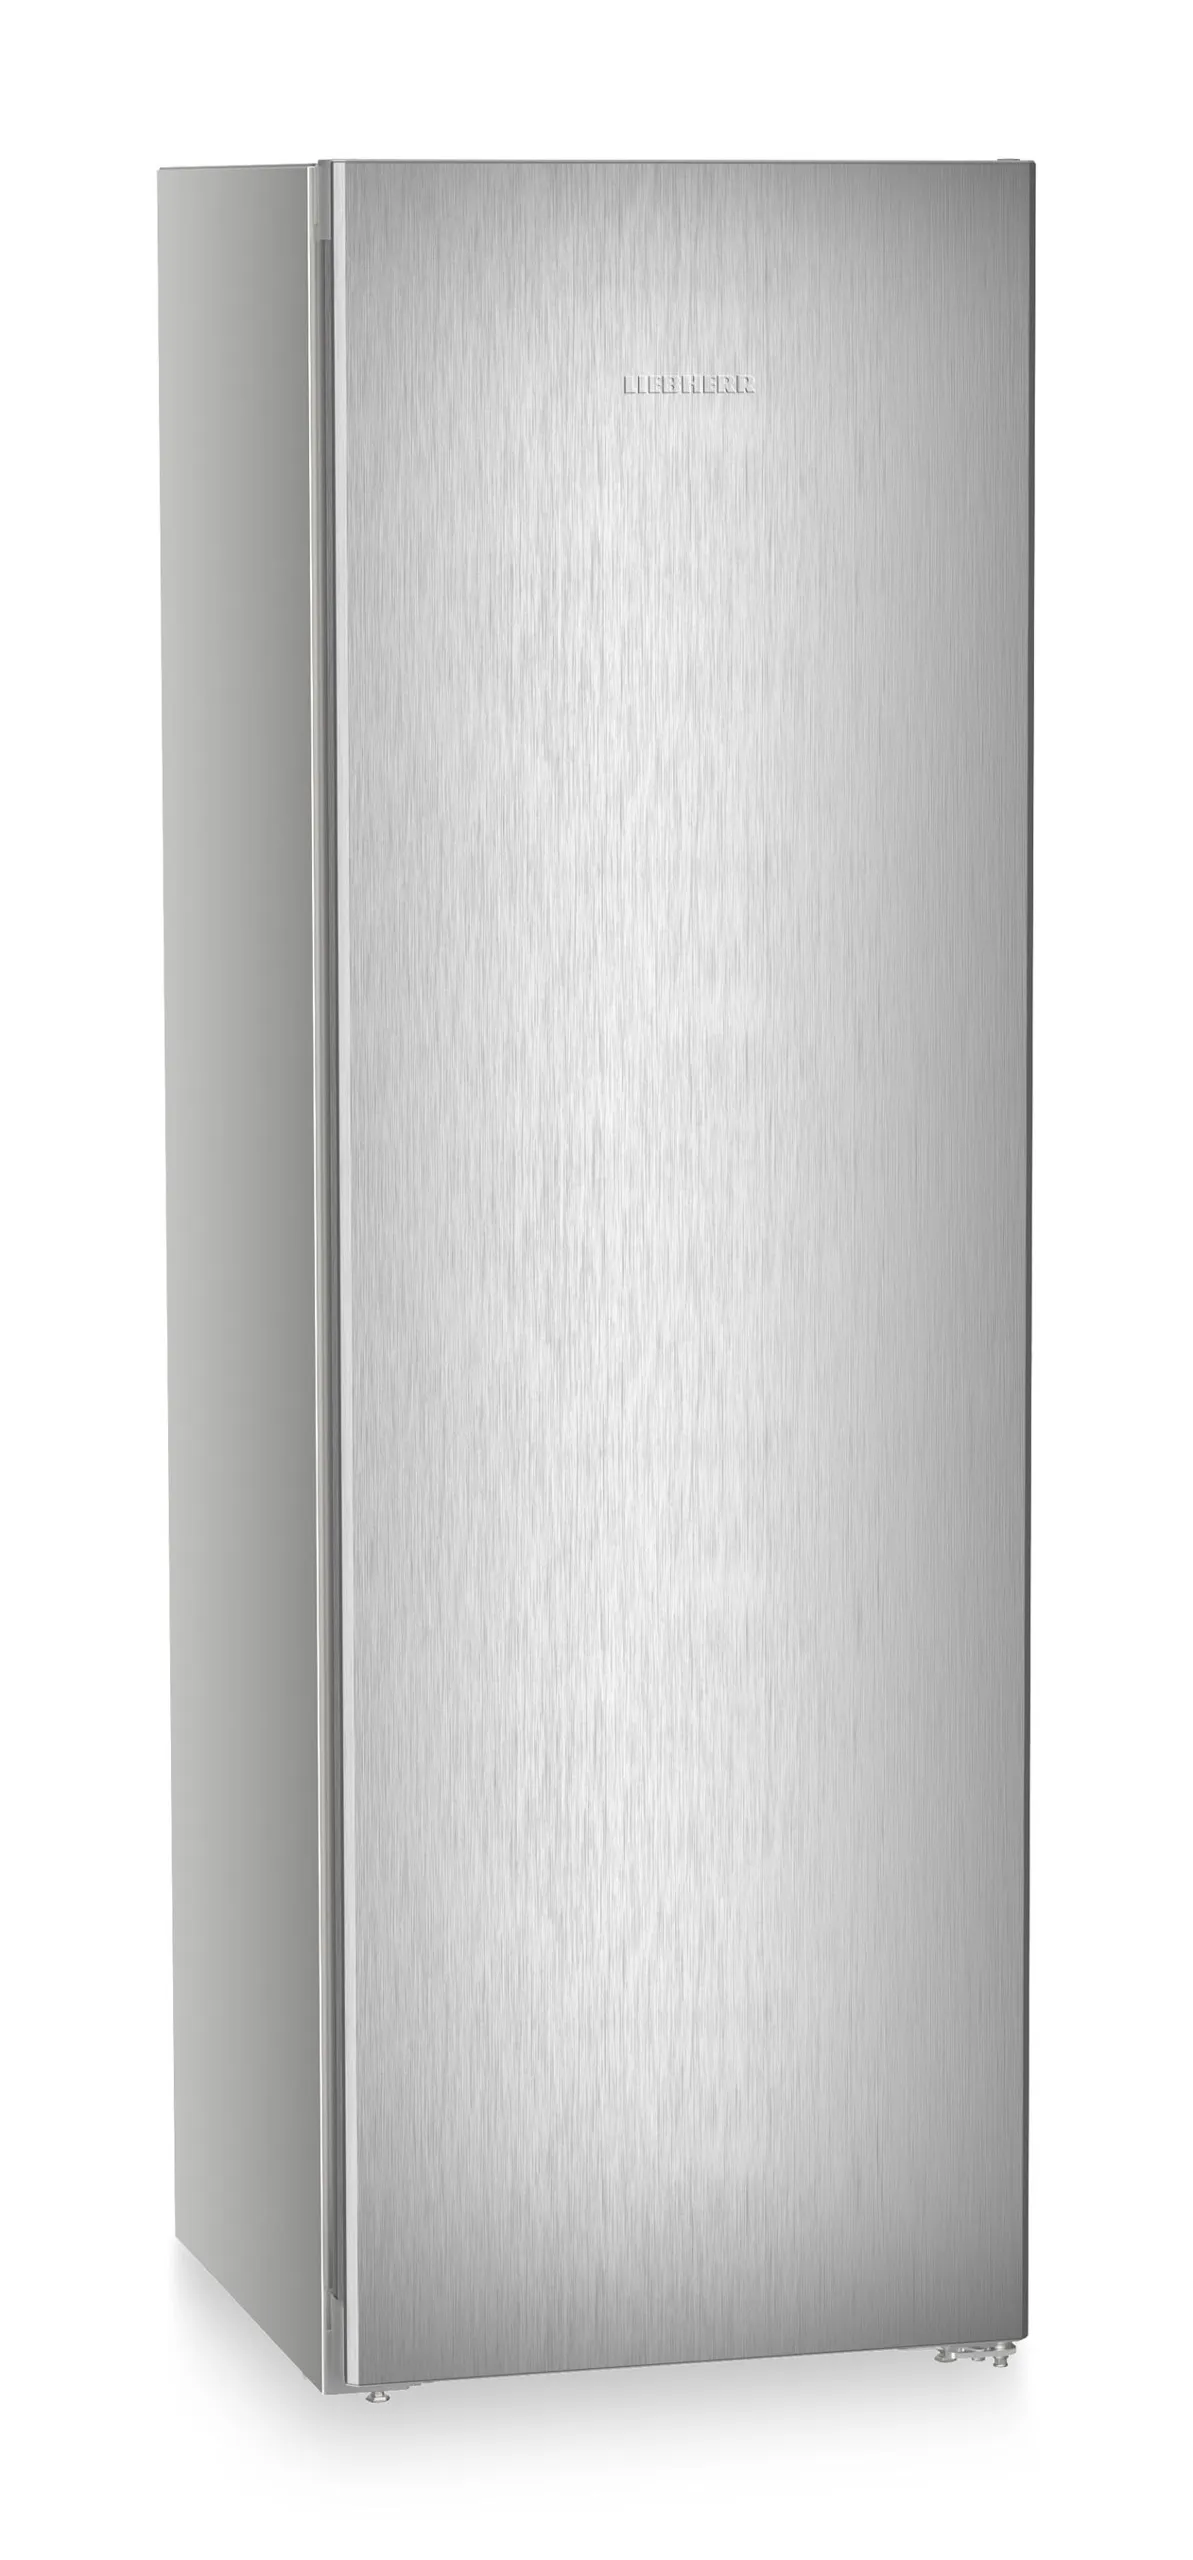 Single door refrigerator 60 cm RBsfe 5220 Liebherr